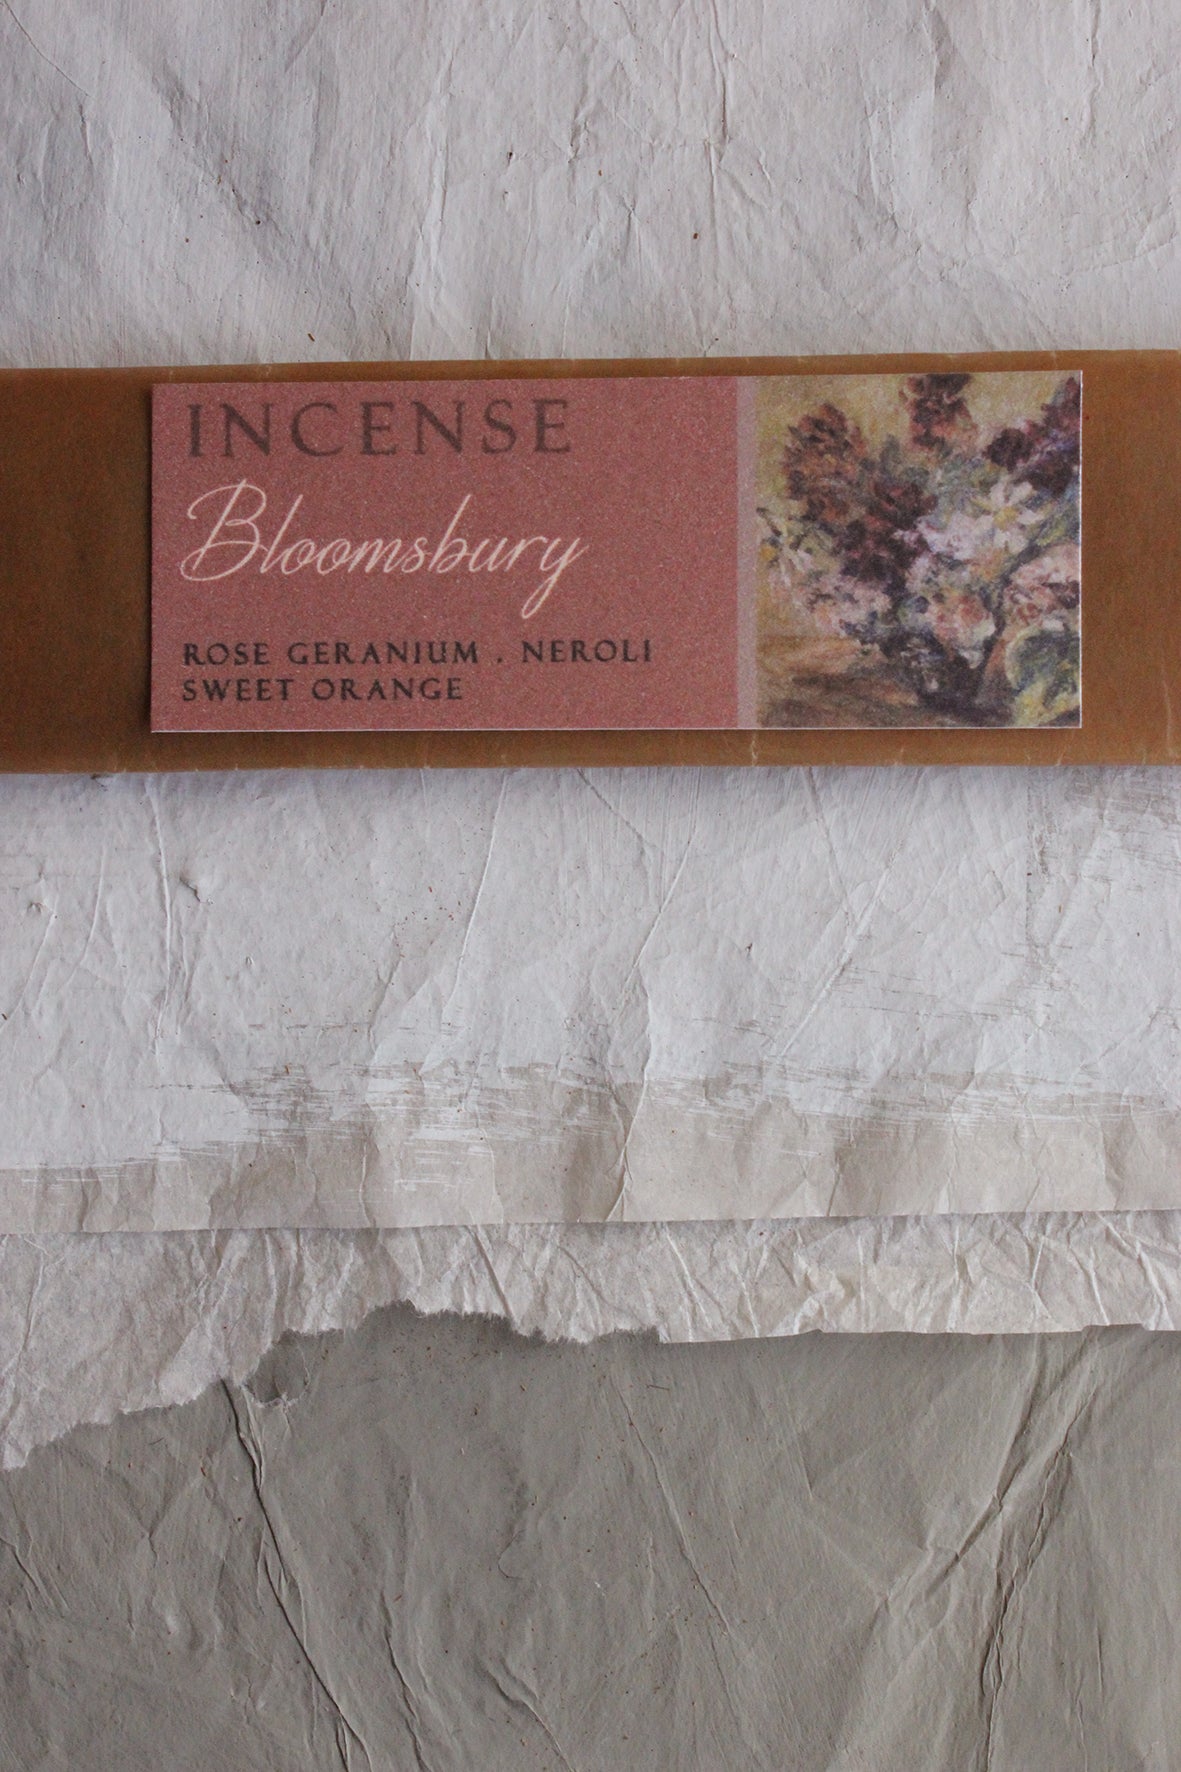 Incense - "Bloomsbury"